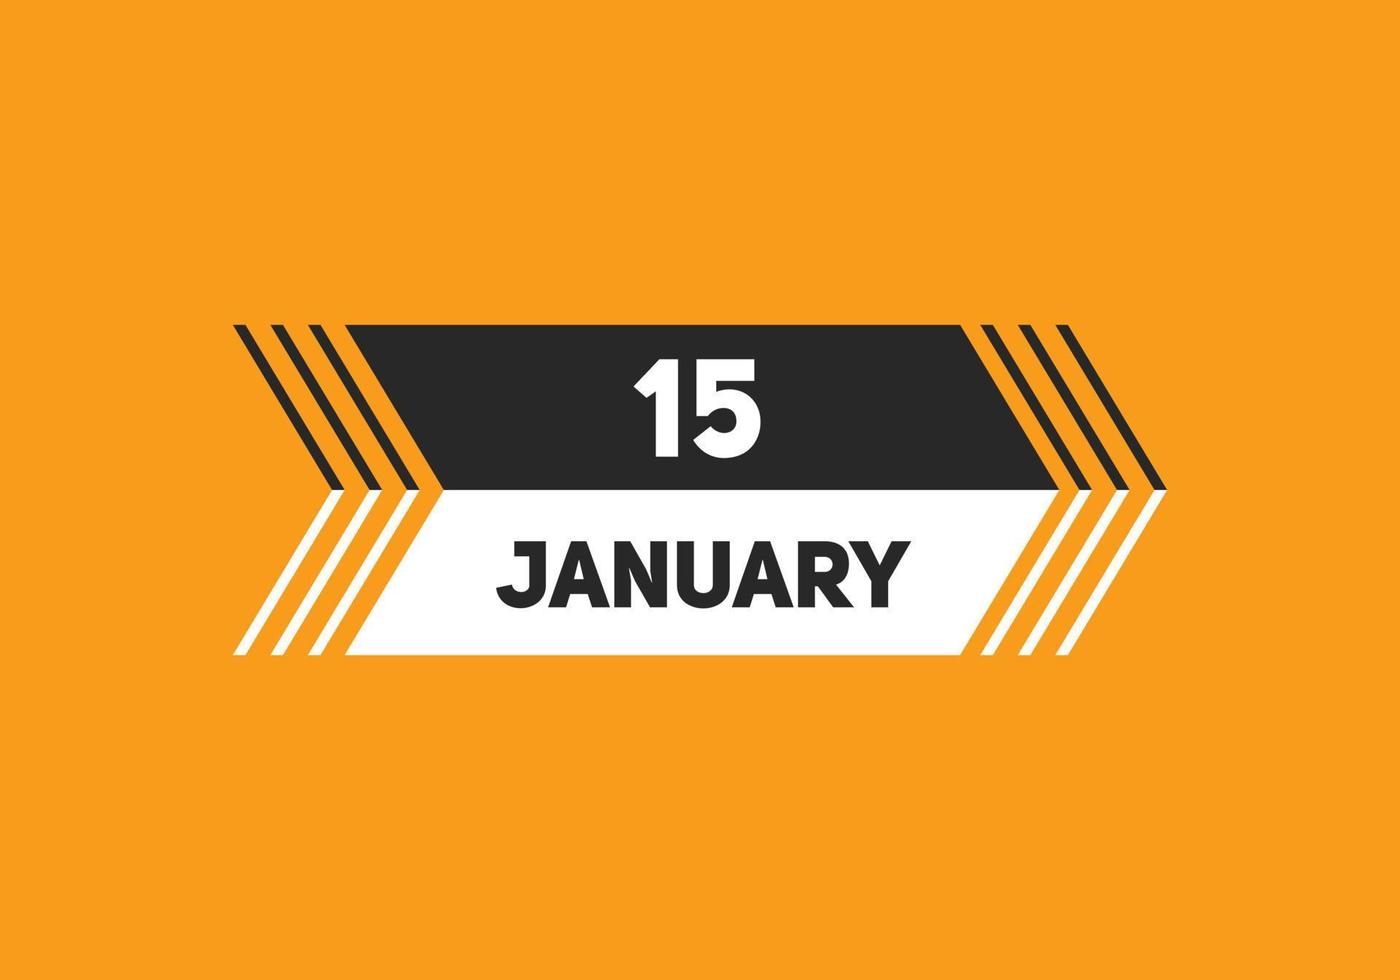 15. januar kalender erinnerung. 15. januar tägliche kalendersymbolvorlage. Kalender 15. Januar Icon-Design-Vorlage. Vektor-Illustration vektor